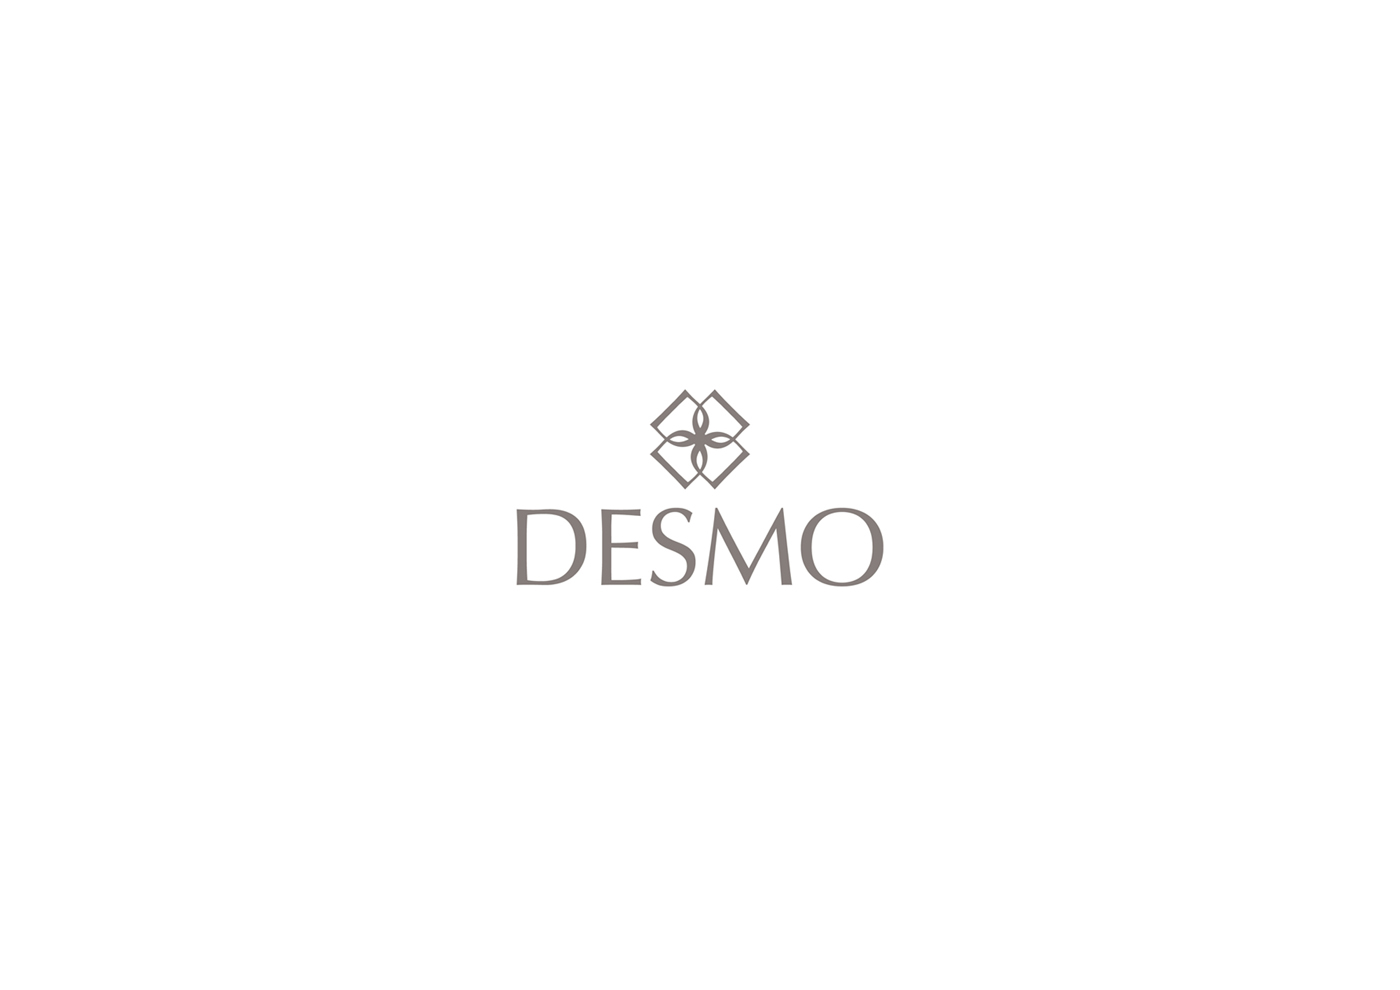 Brand Identity: DESMO